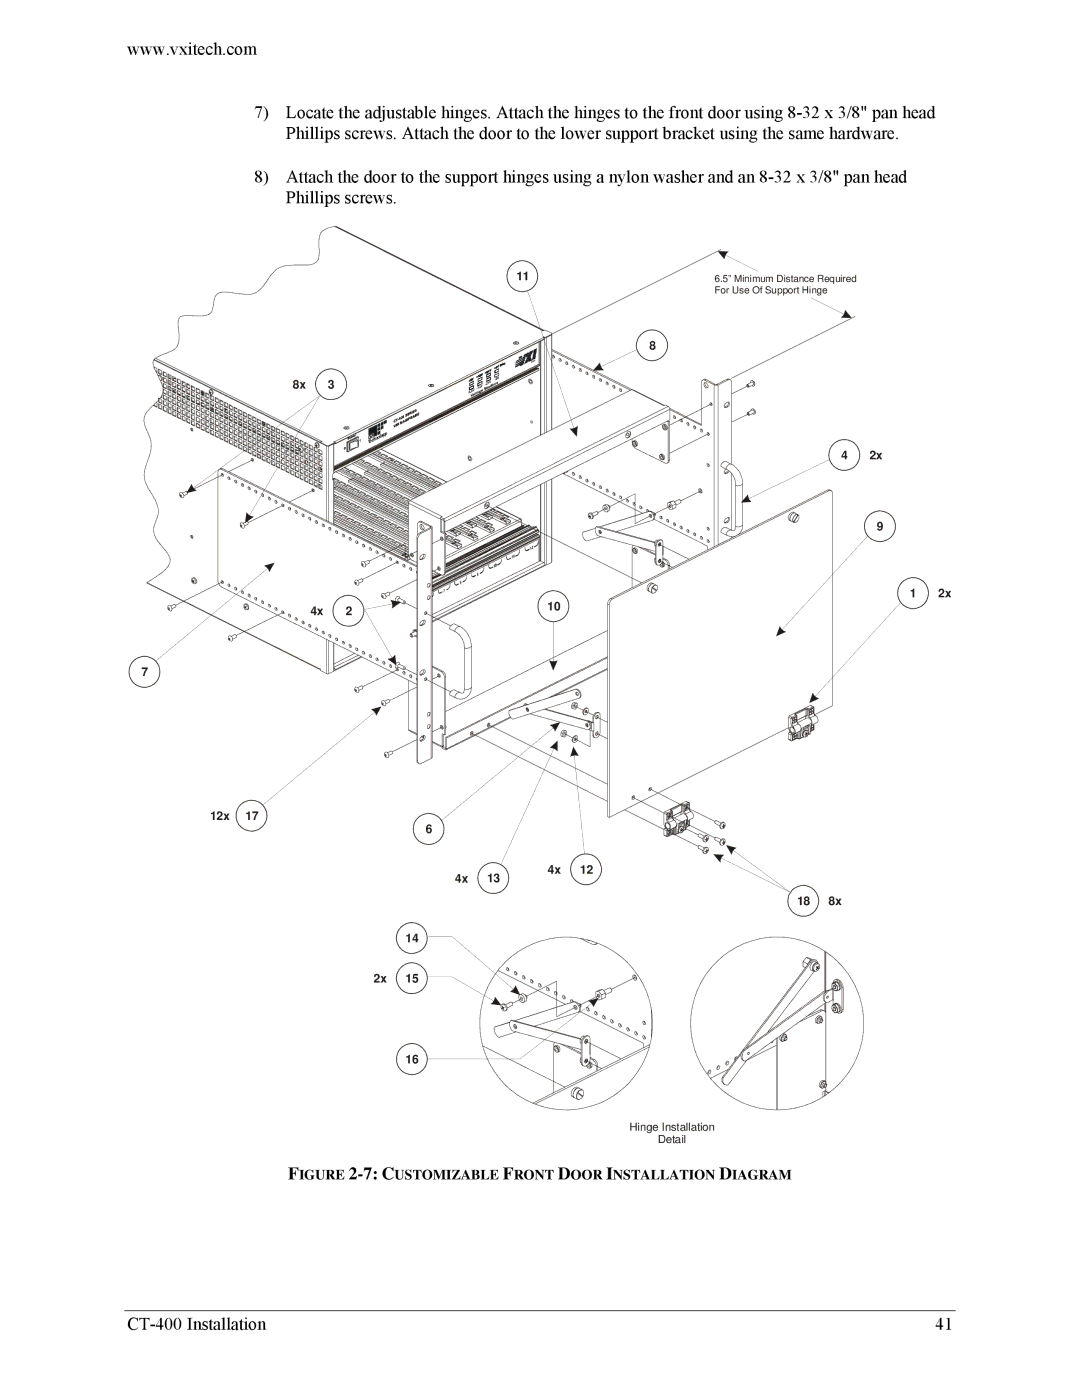 VXI CT-400 user manual Customizable Front Door Installation Diagram 